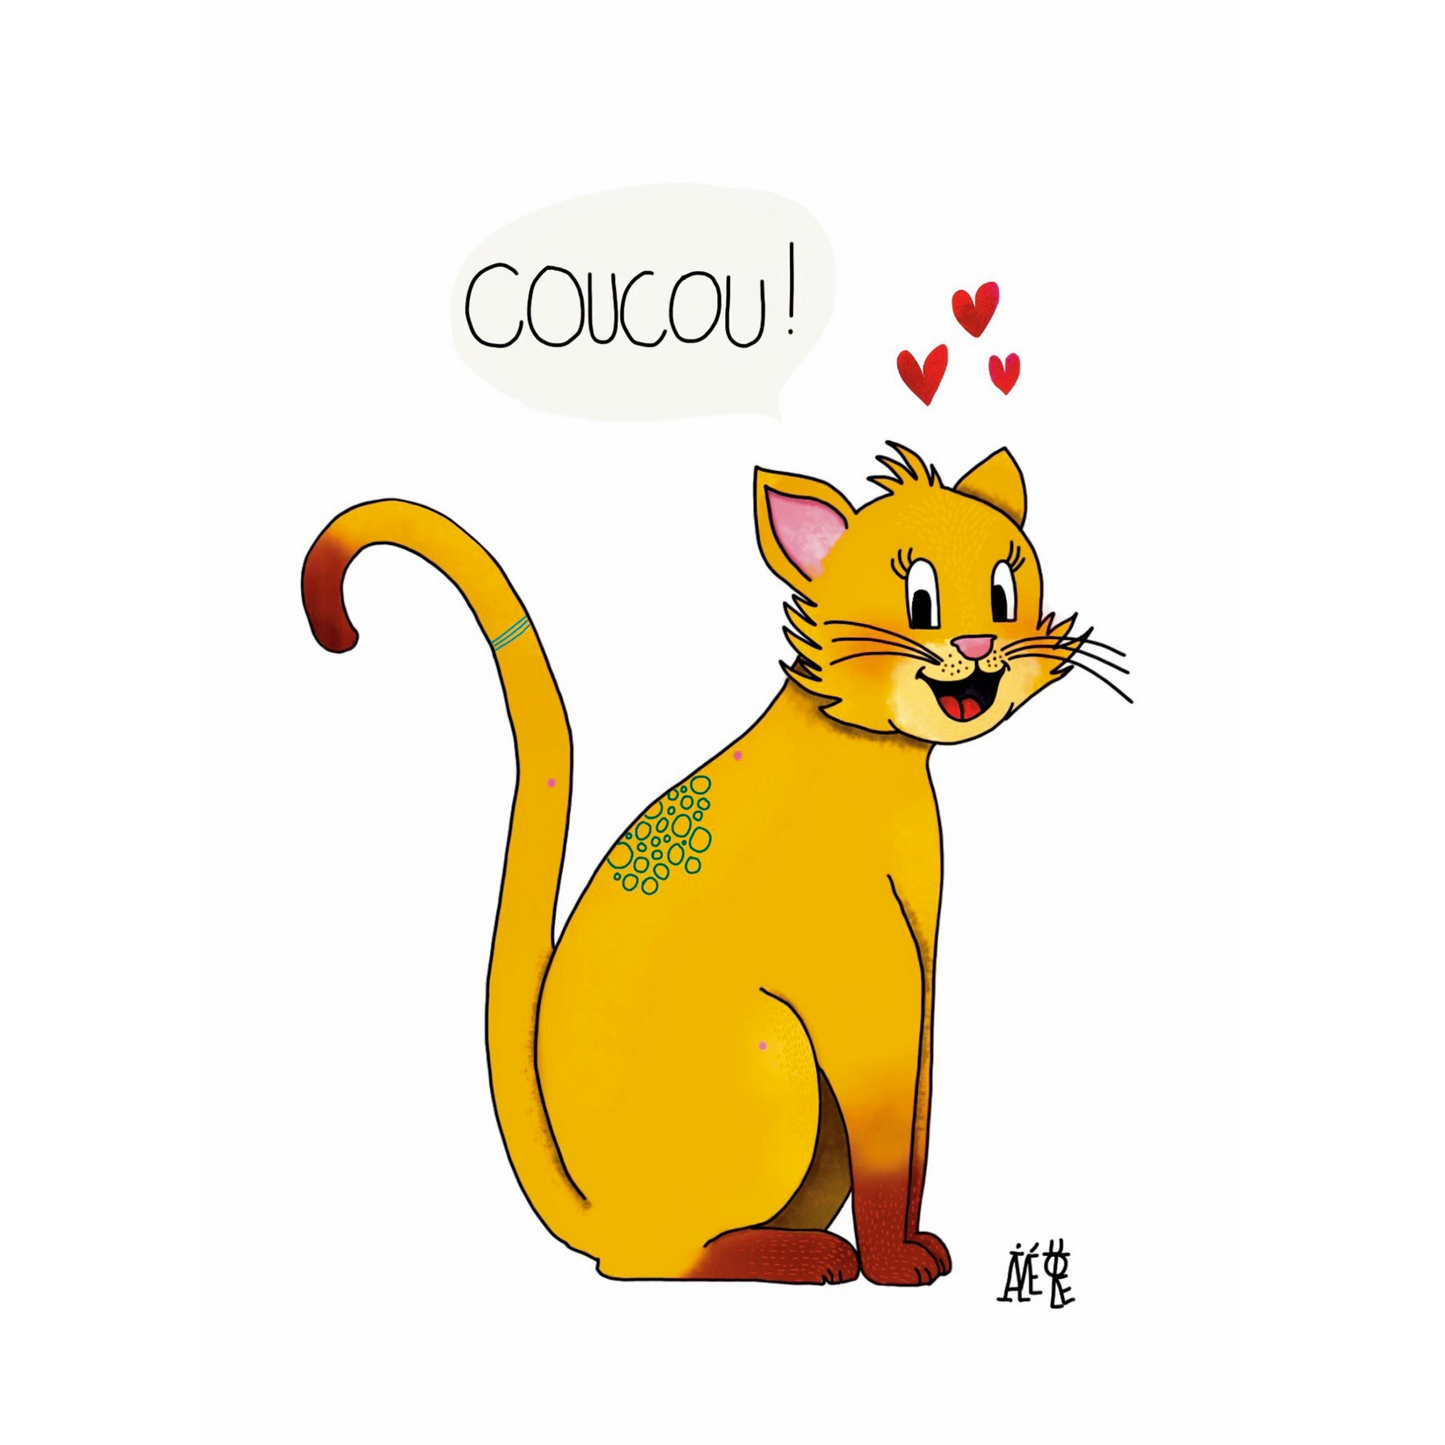 Carte postale de format A6 (Classique) un chat jaune assis de profil mais qui a sa tête vers le spectateur. Une bulle au-dessus : "Coucou!" avec 3 coeurs.